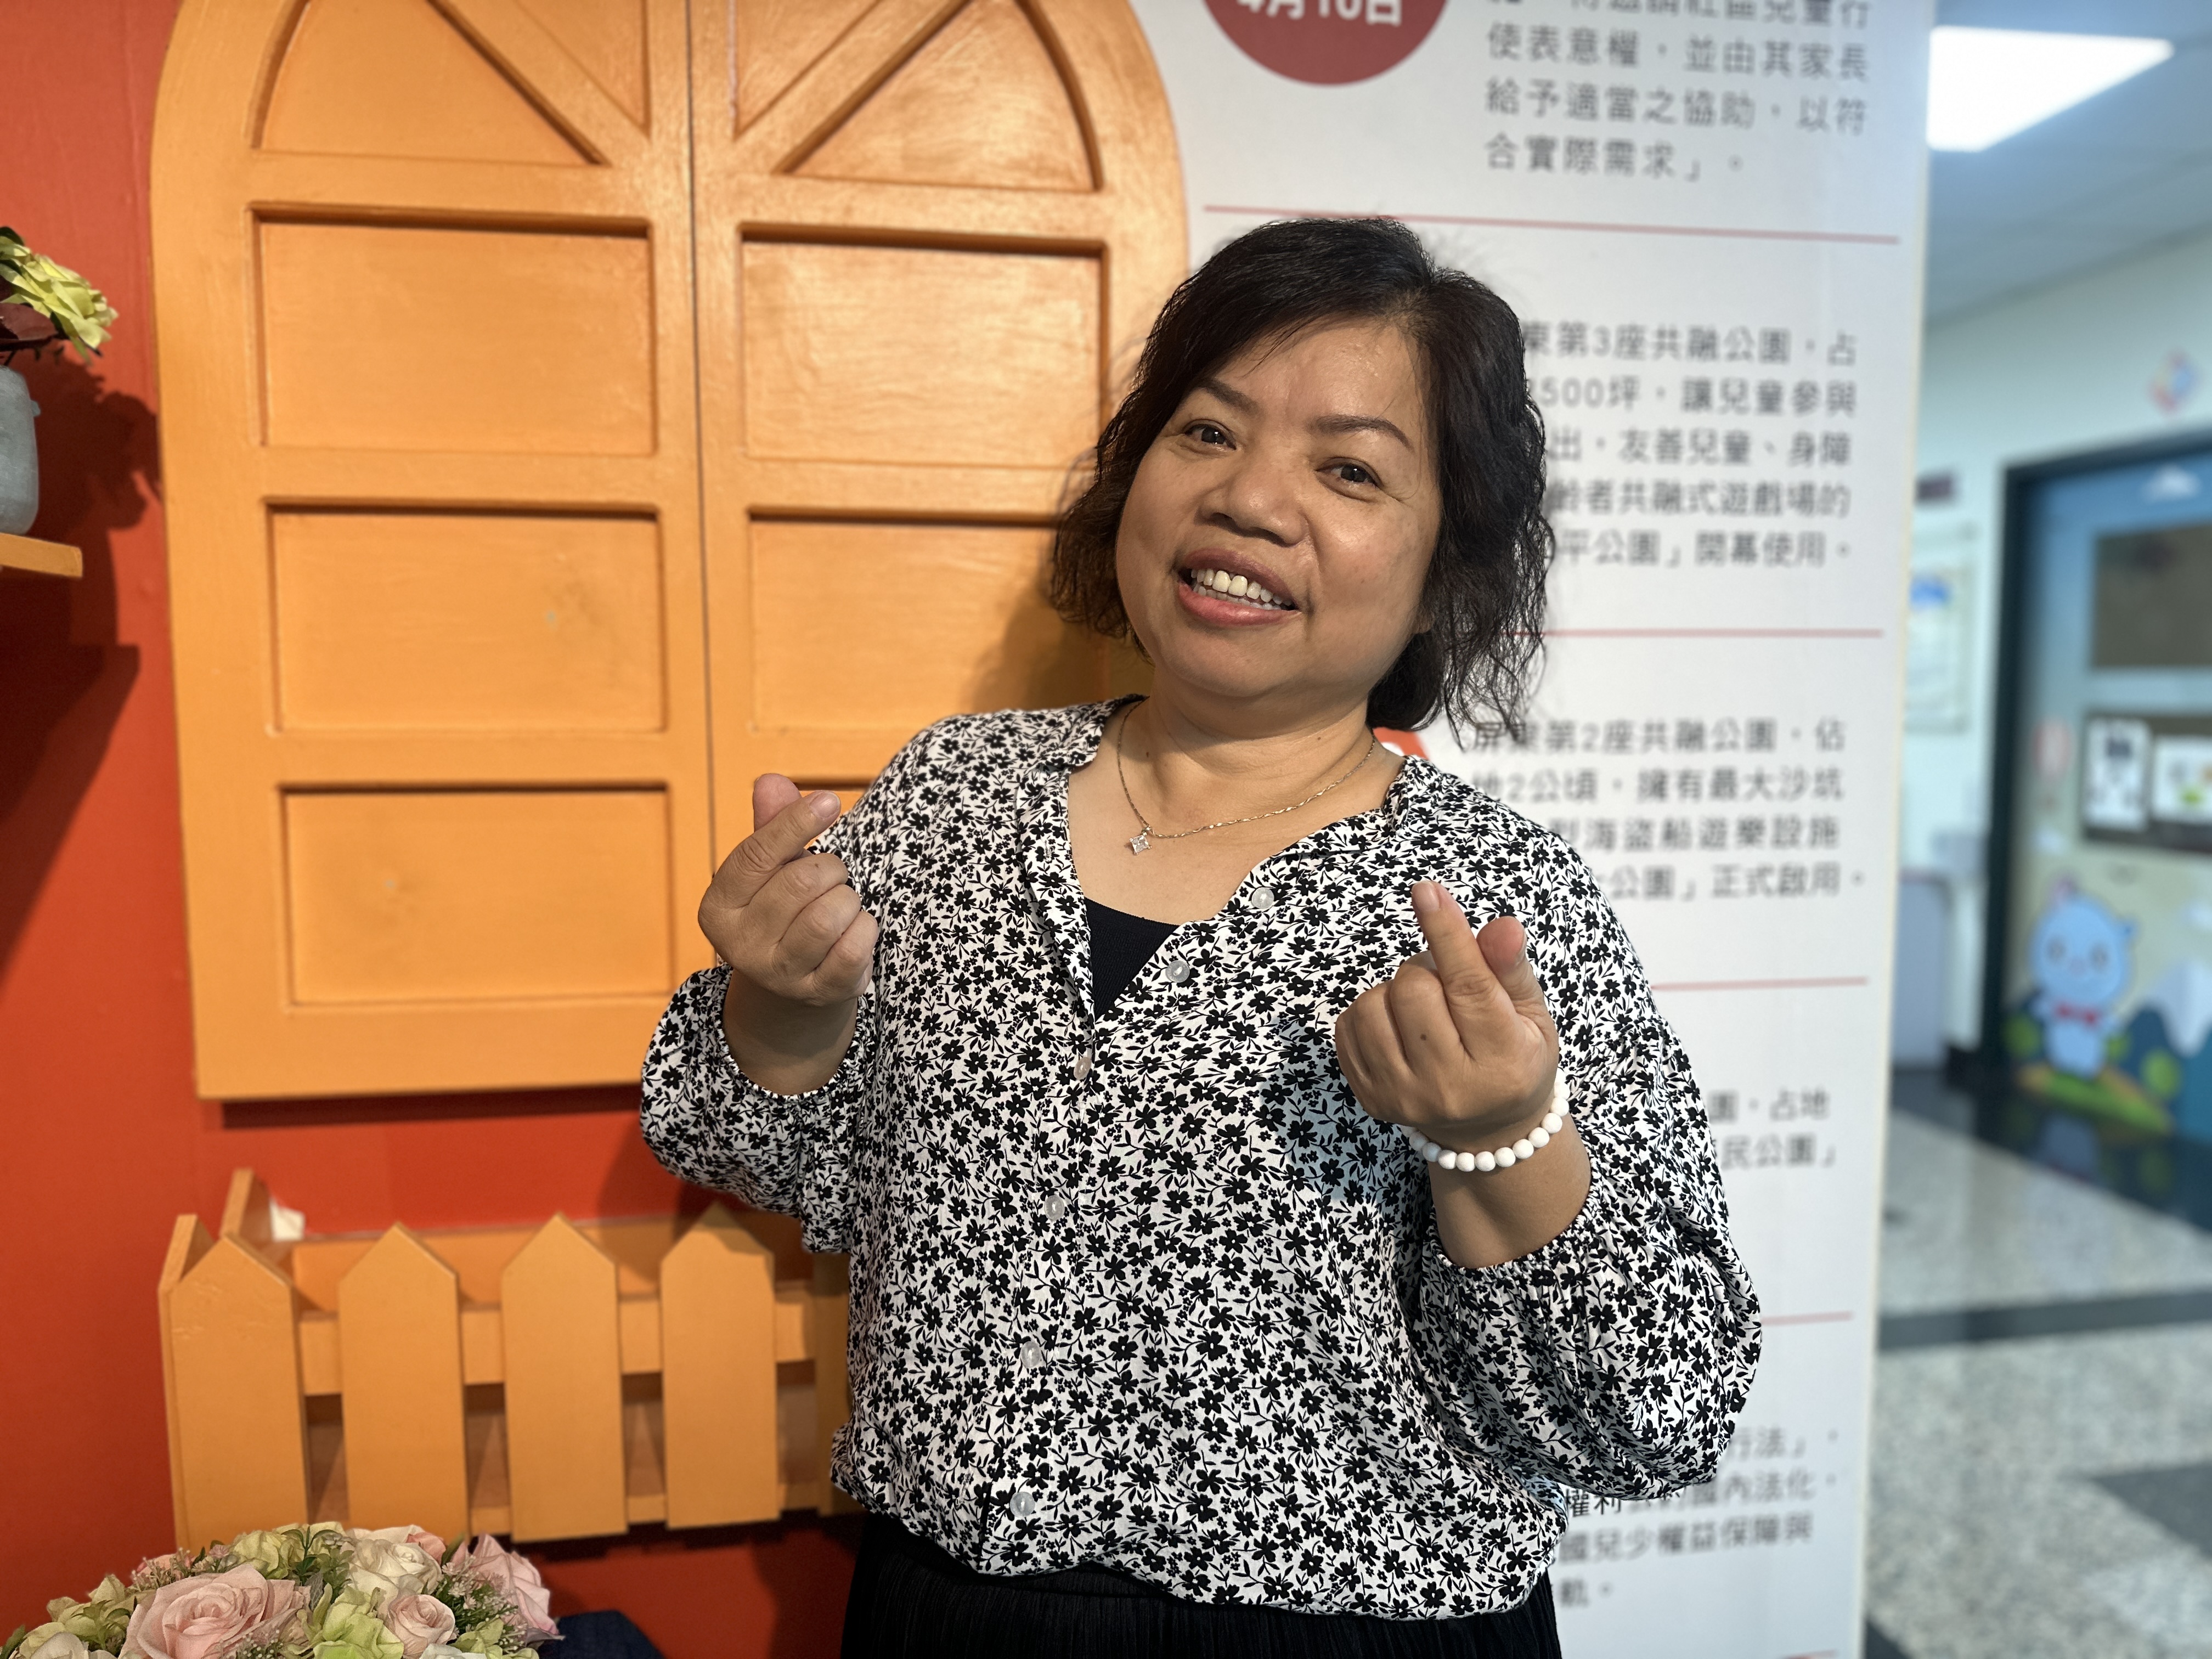 屏东县社会处60岁社工邱靖雯给人温暖信赖感，她在40岁时从美容师转战社工领域，她说，她是中高年龄就业妇女，开启一趟「助人奇妙旅程」。记者刘星君／摄影